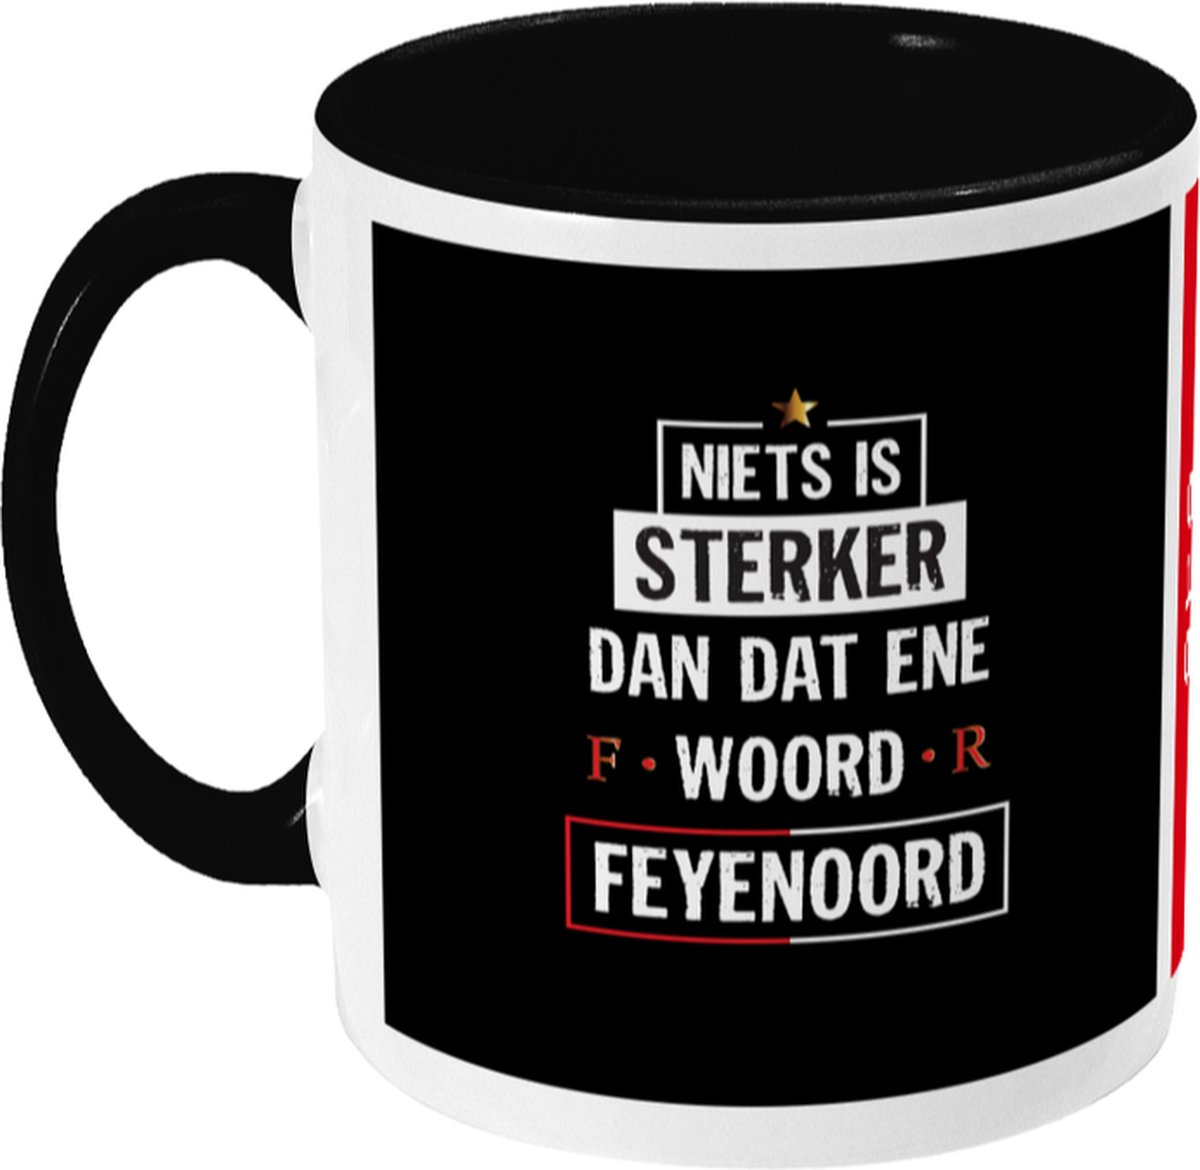 Feyenoord Mok - Dat Ene Woord - Koffiemok - Rotterdam - 010 - Voetbal - Beker - Koffiebeker - Theemok - Zwart - Limited Edition